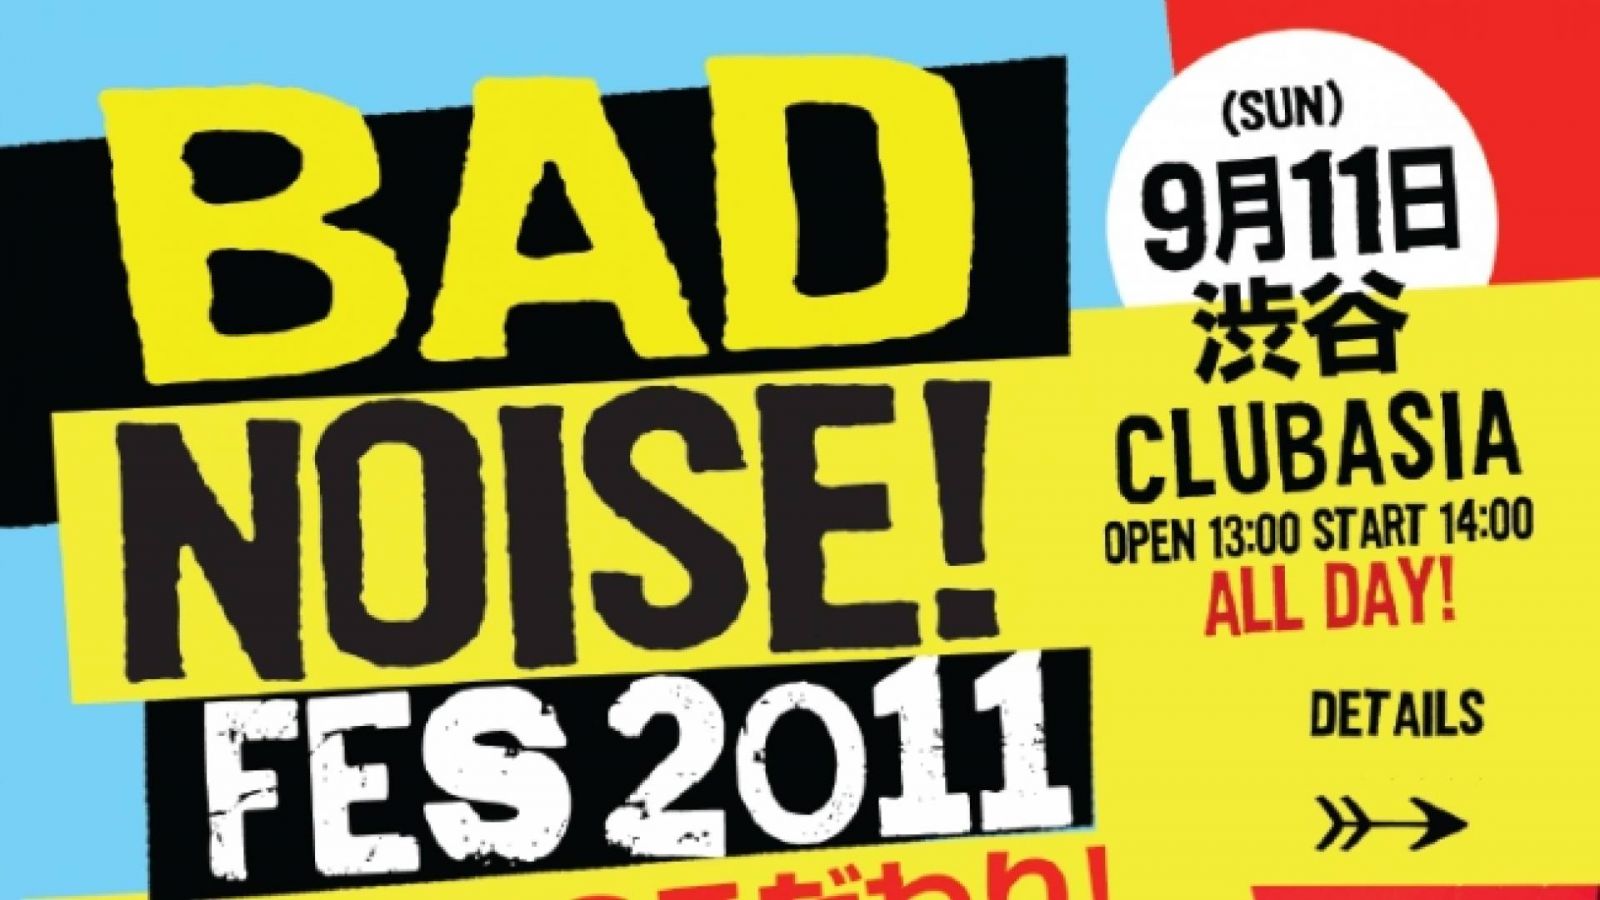 Bad Noise! Fes 2011 at Shibuya Club ASIA © Bad Noise